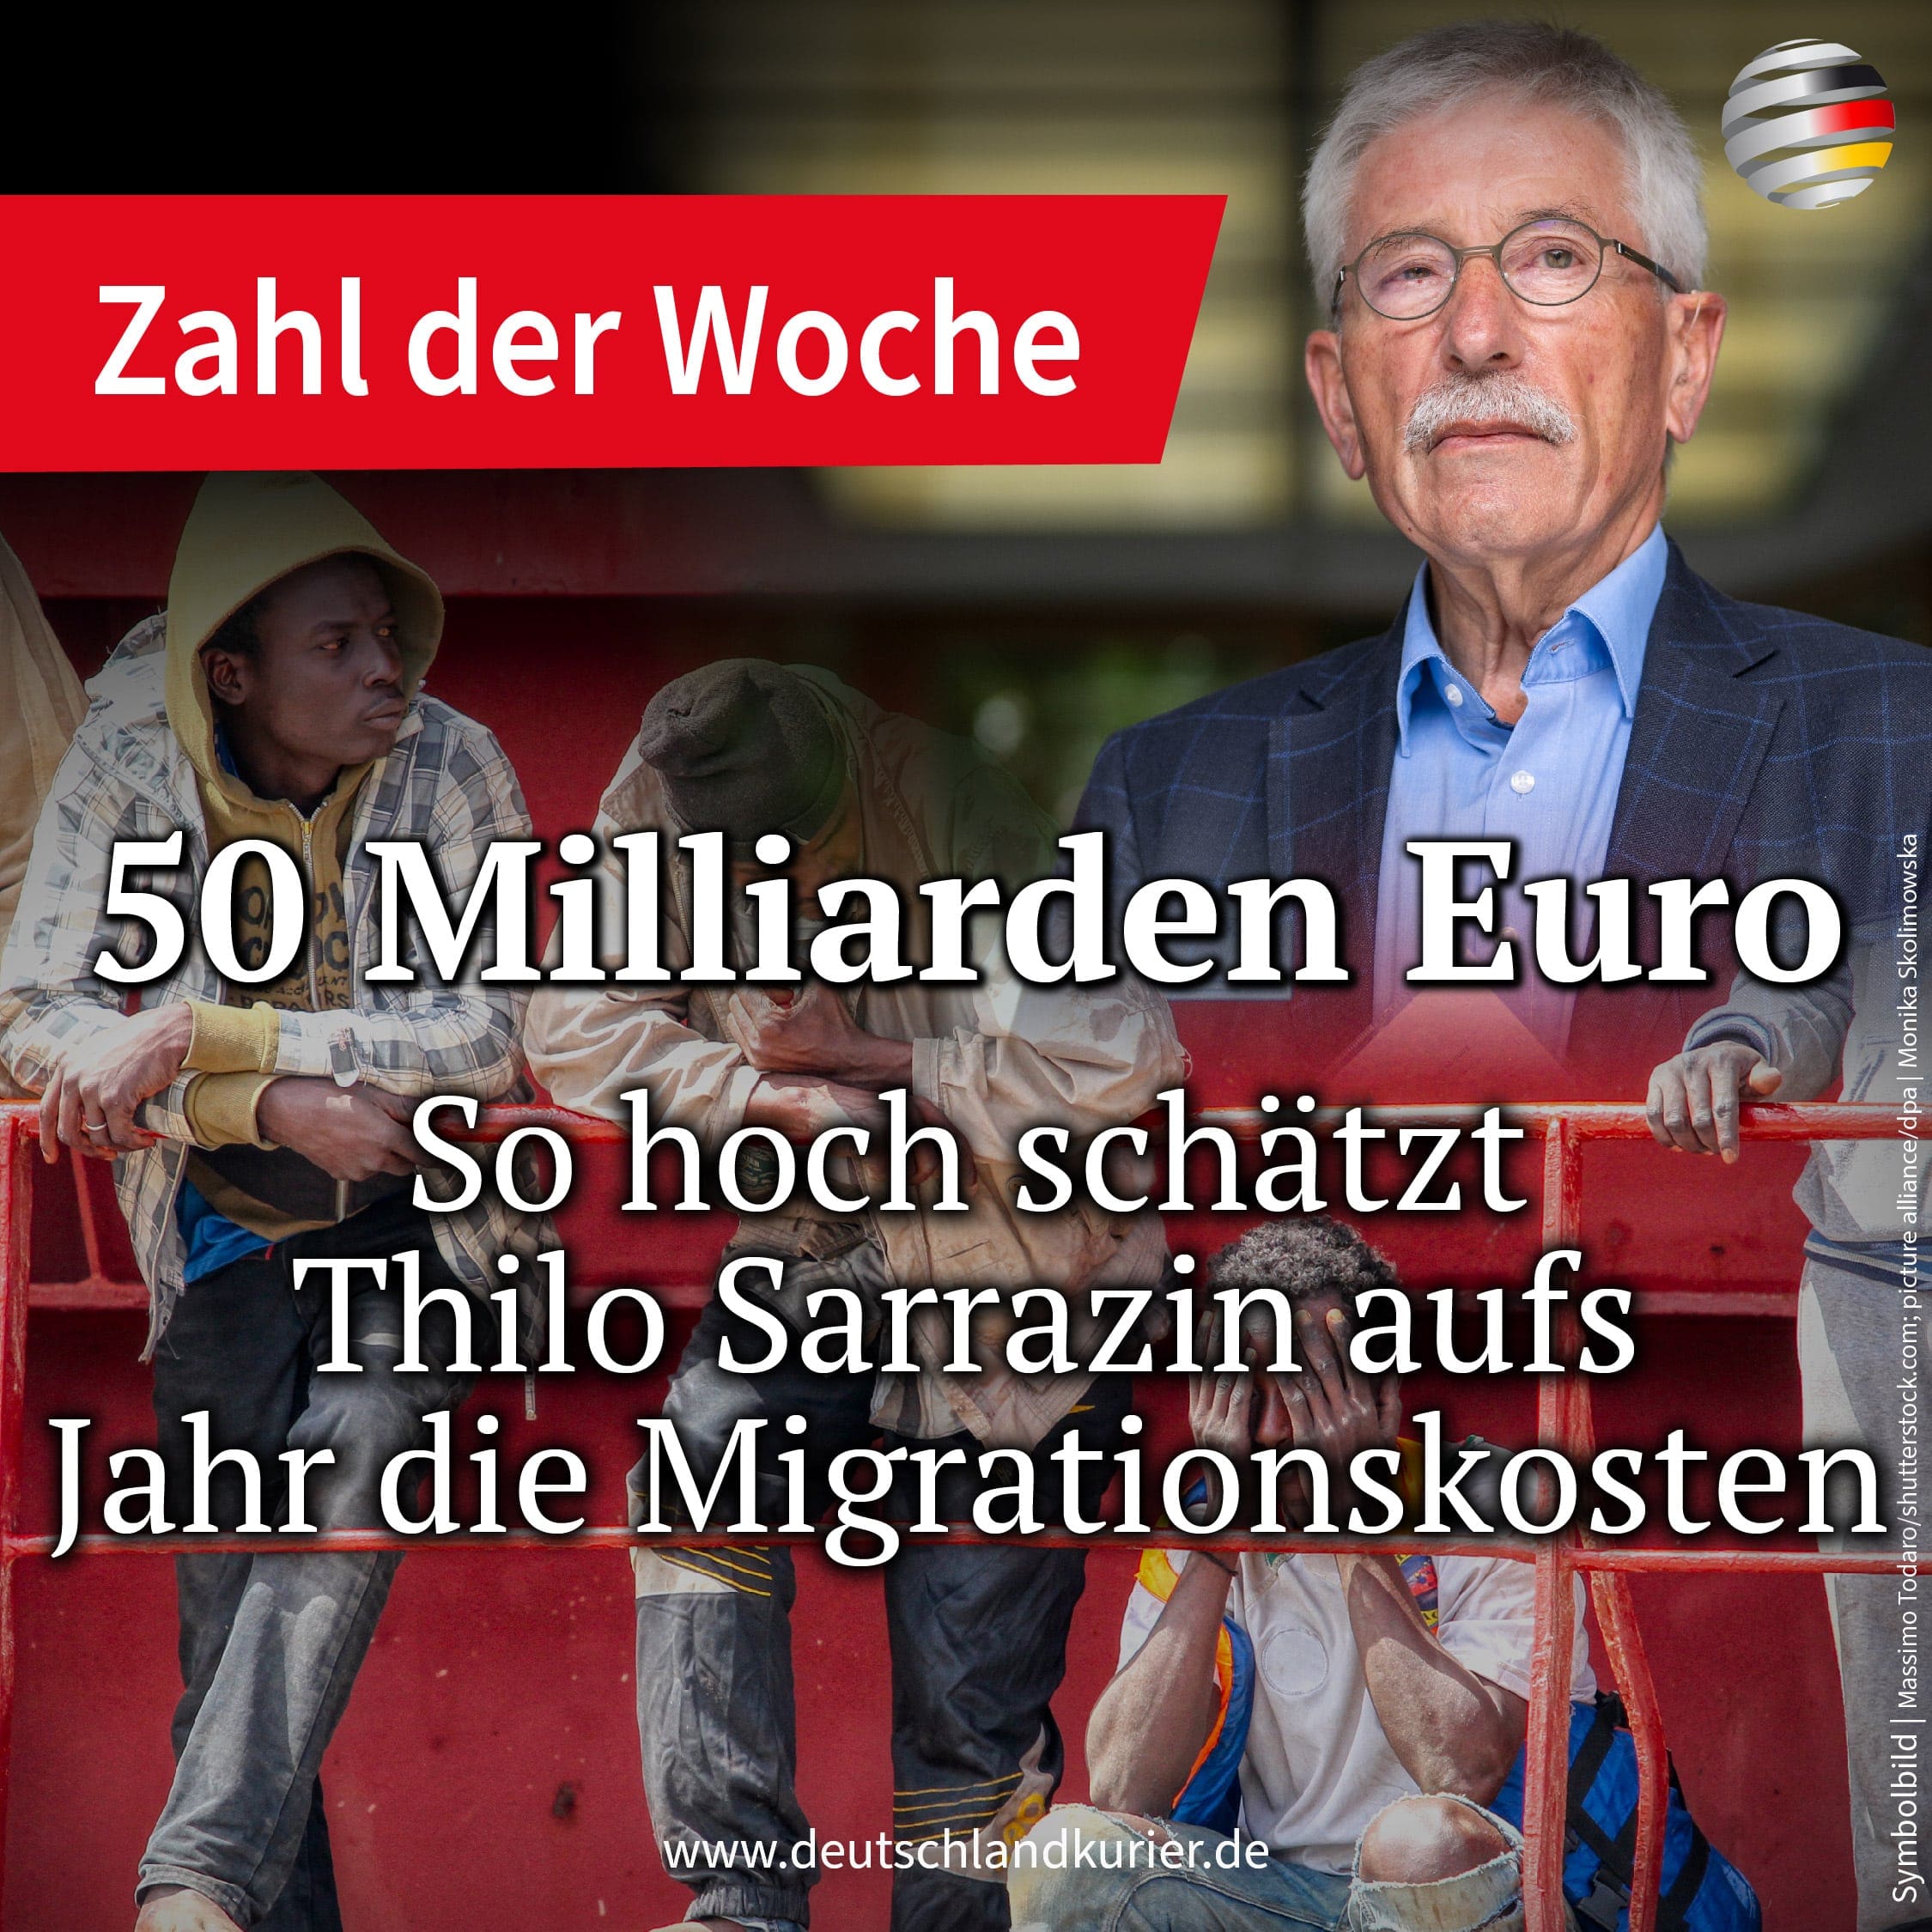 die-geschaetzten-jaehrlichen-migrationskosten-von-thilo-sarrazin-belaufen-sich-auf-50-milliarden-euro